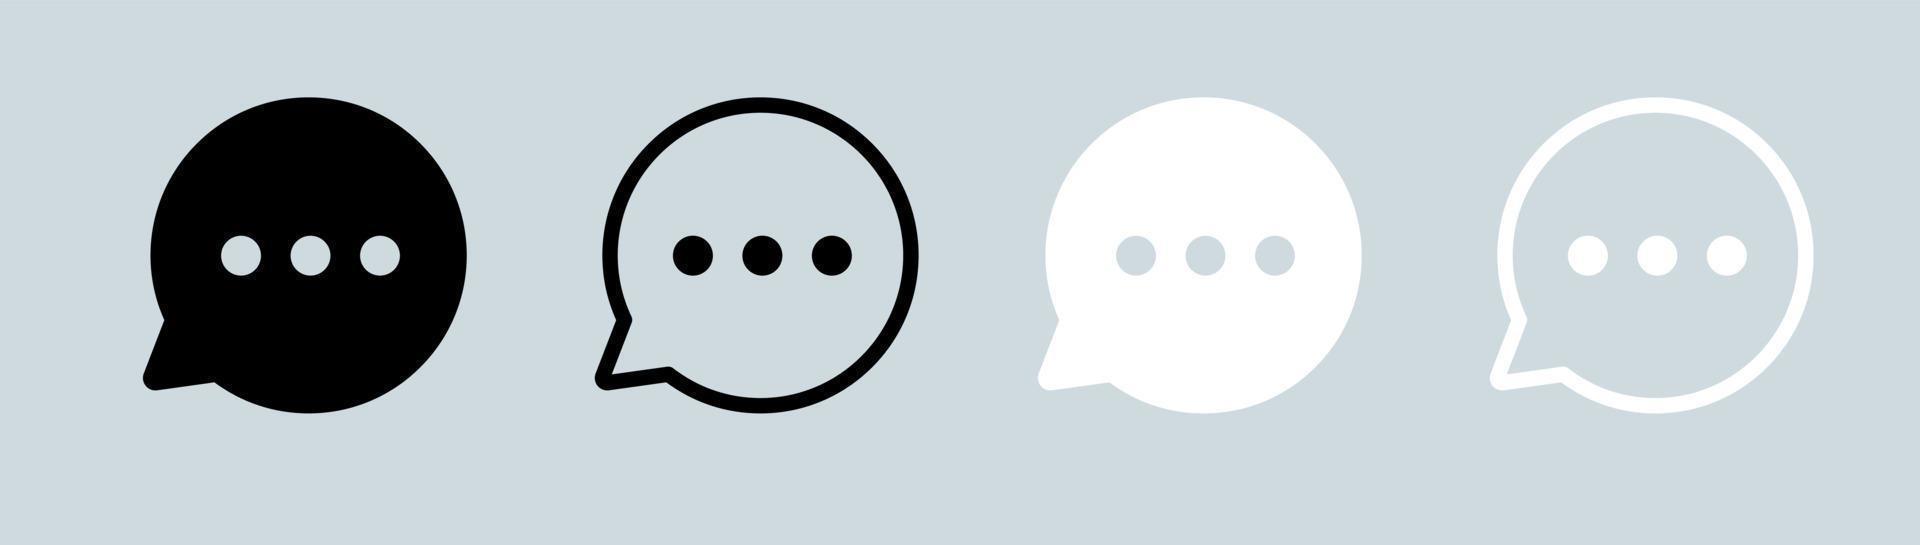 bolle di chat o di messaggistica con l'icona piatta dei punti per l'interfaccia di app e siti Web. vettore